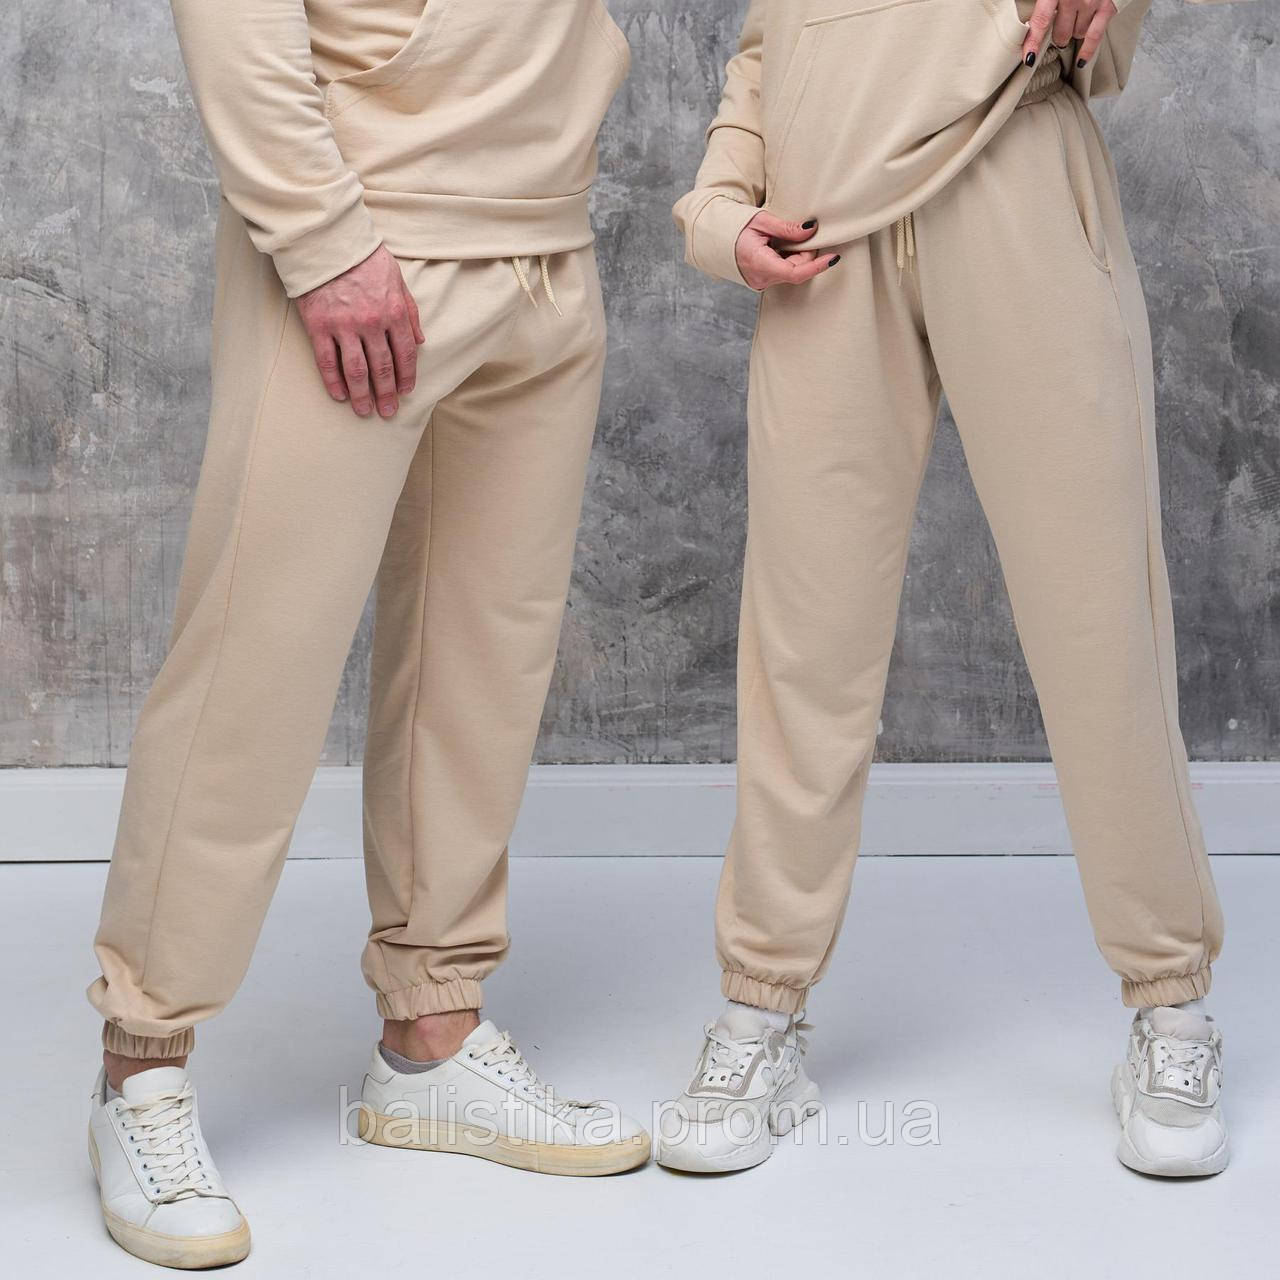 Спортивні бежеві штани Heicone, модмісезонні легкі базові штани для спорту чоловічі та жіночі унісекс